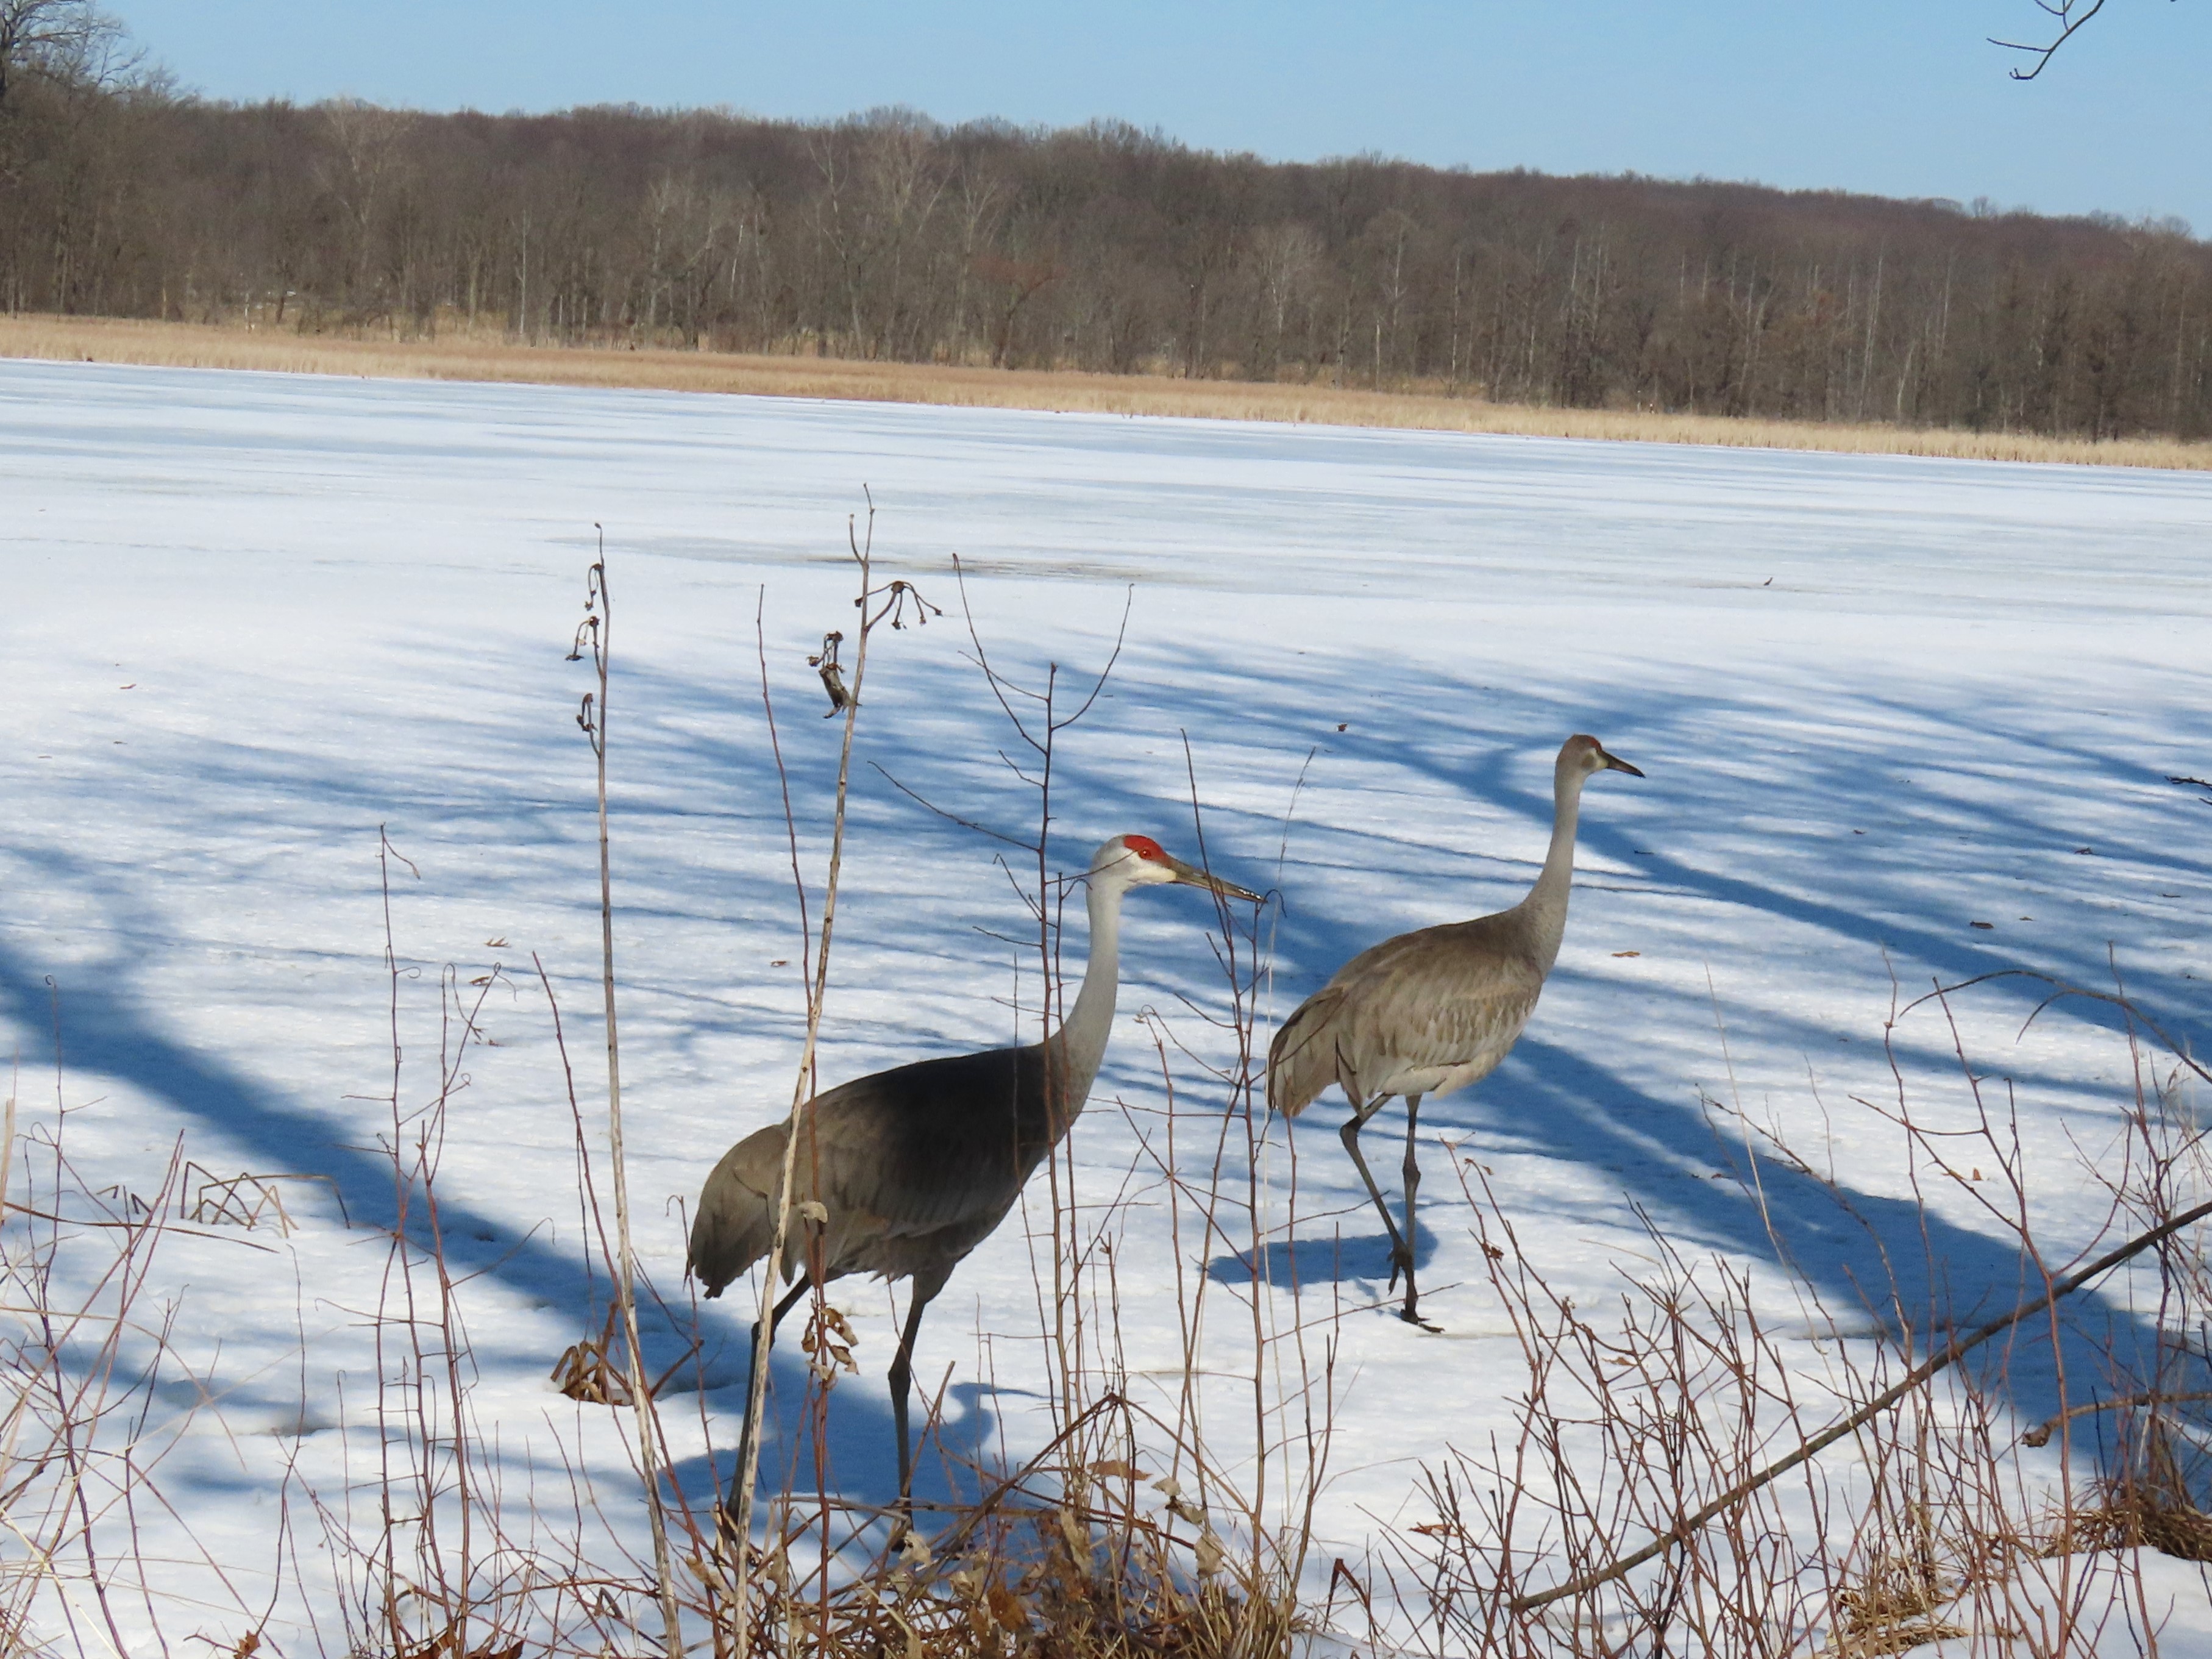 Two Sandhill Cranes walk on a frozen lake